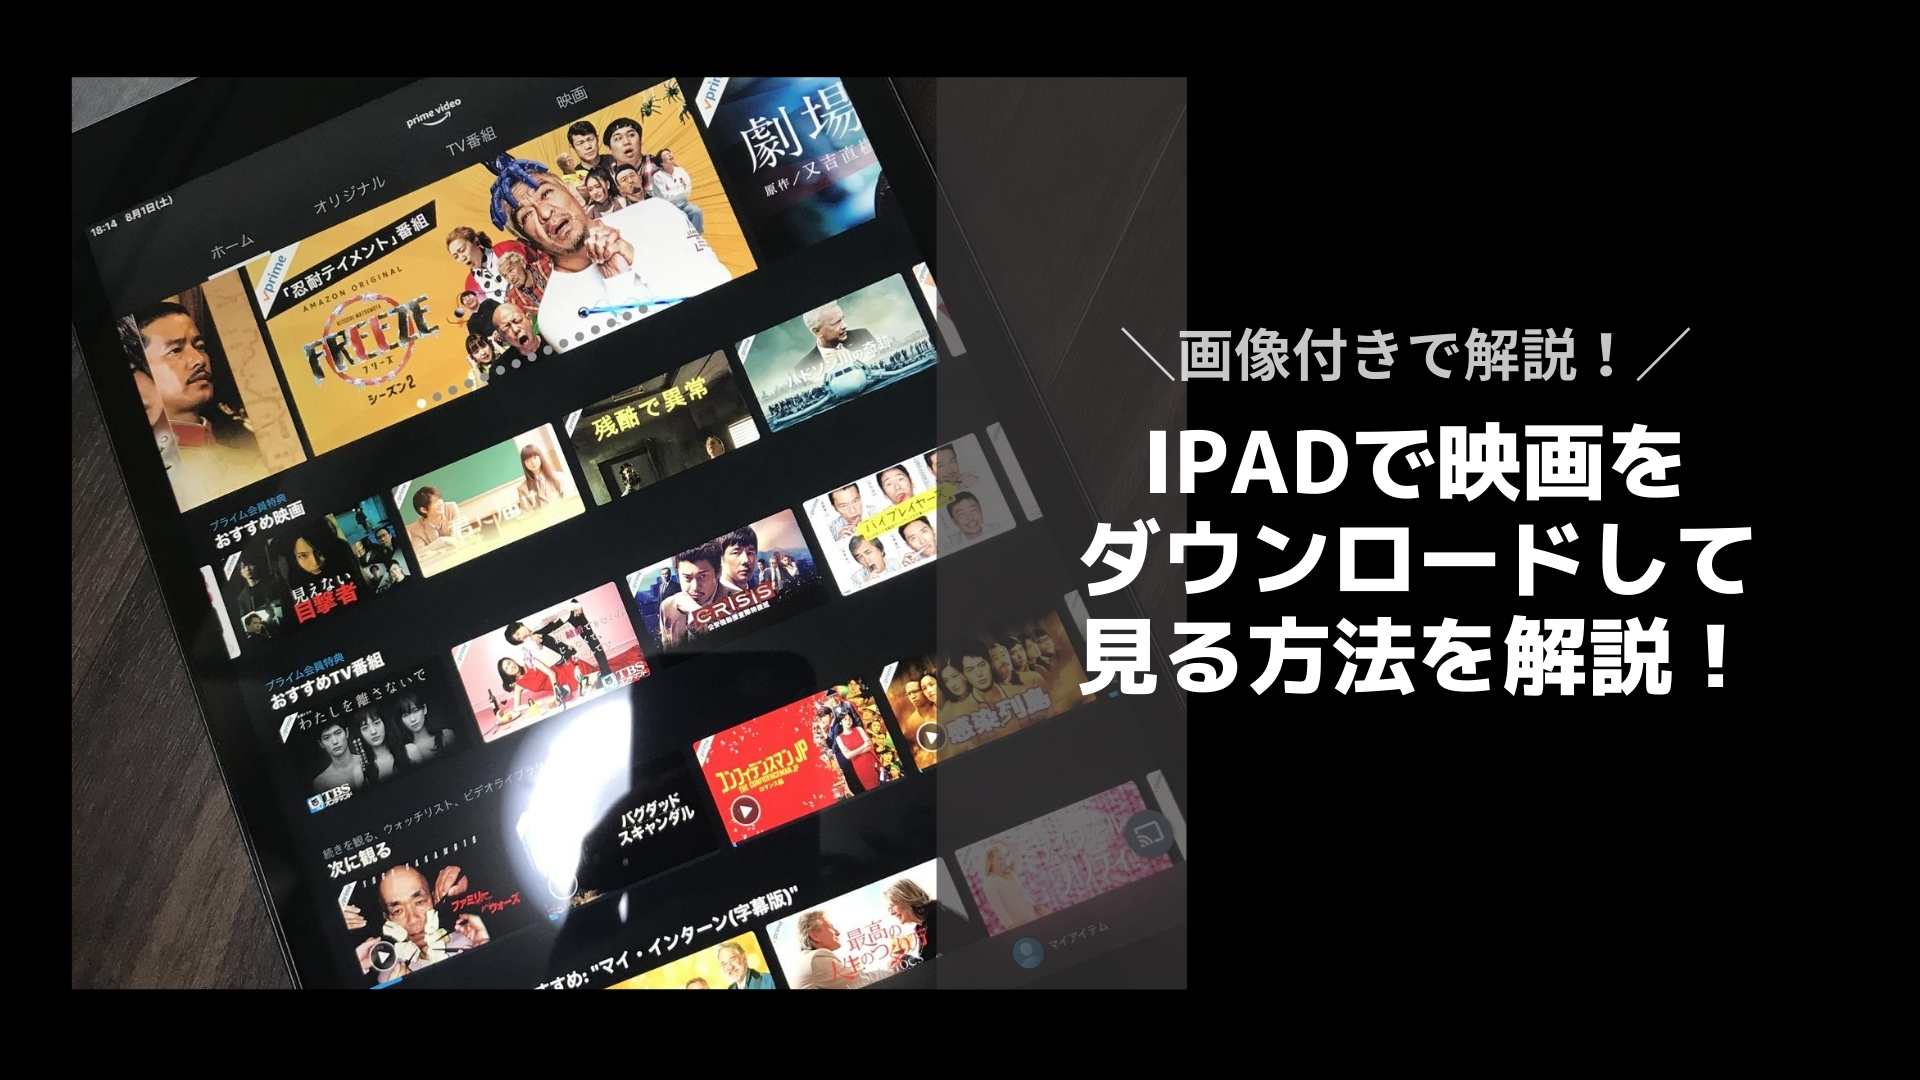 Ipadで映画をダウンロードして見る方法 Ipadユーザーはオフラインでこう楽しむ